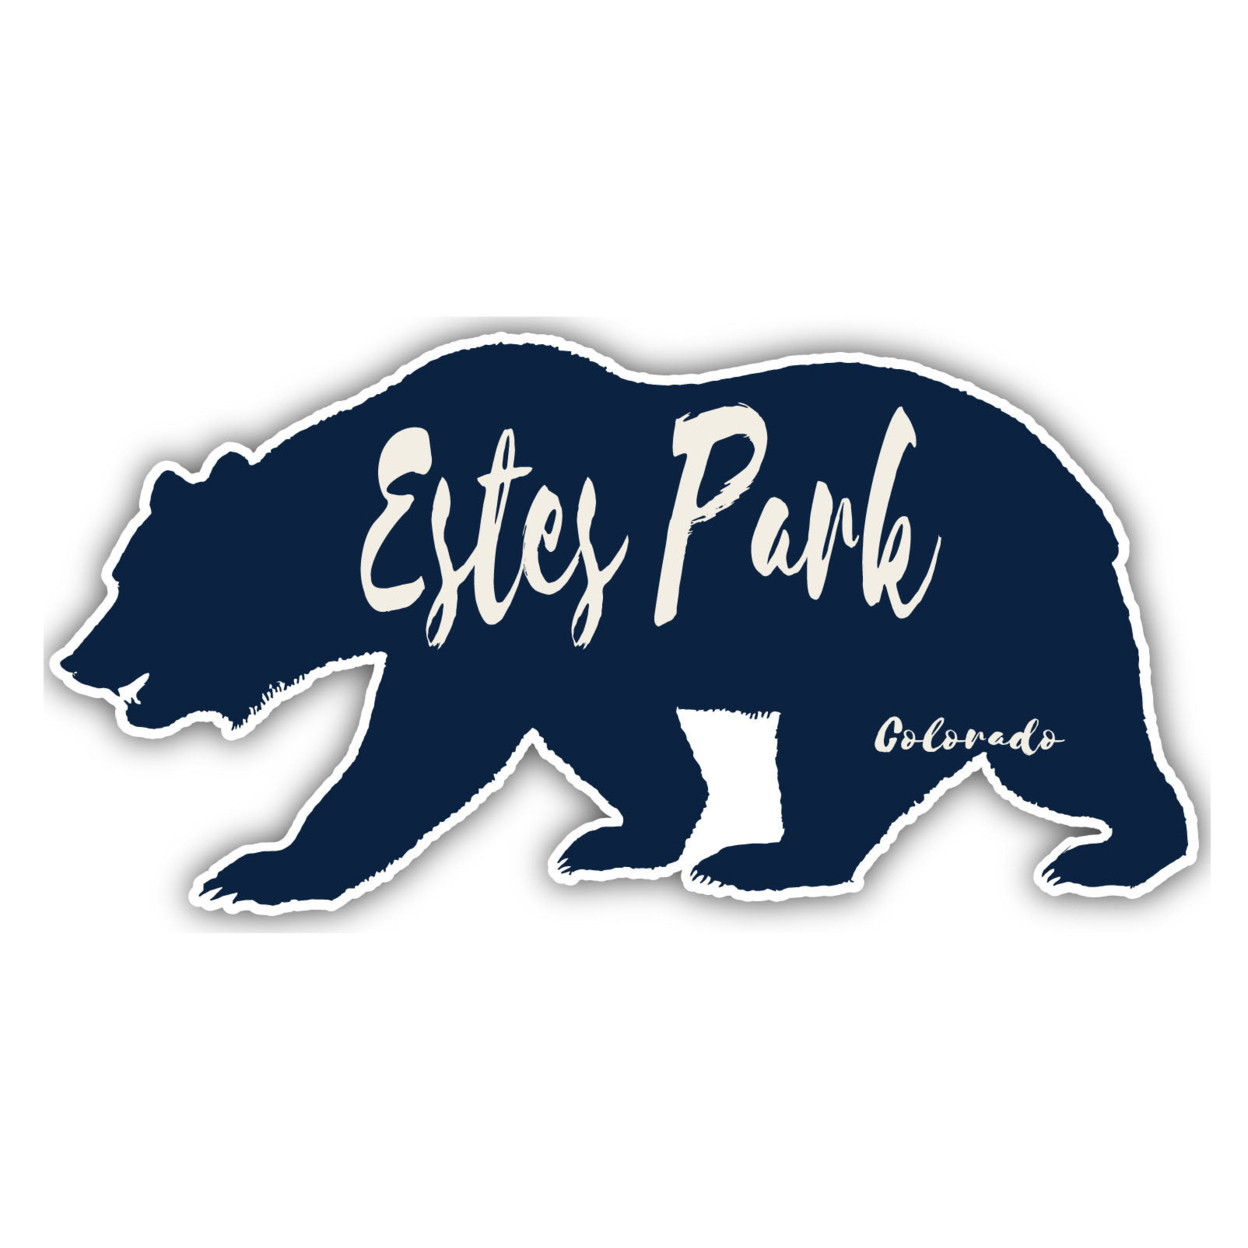 Estes Park Colorado Souvenir Decorative Stickers (Choose Theme And Size) - 4-Pack, 4-Inch, Adventures Awaits